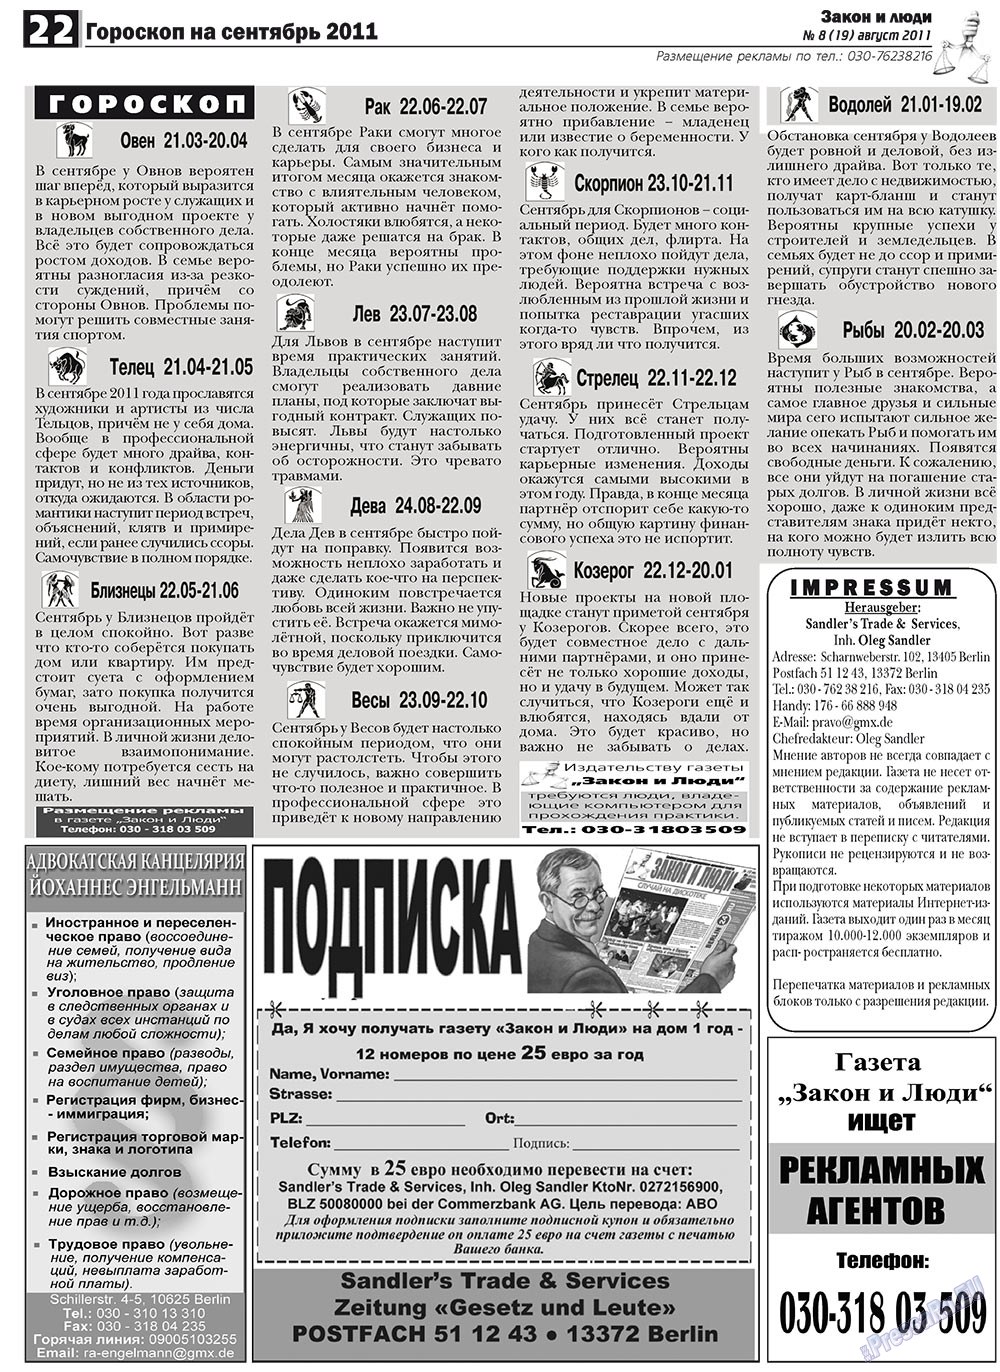 Закон и люди, газета. 2011 №8 стр.22